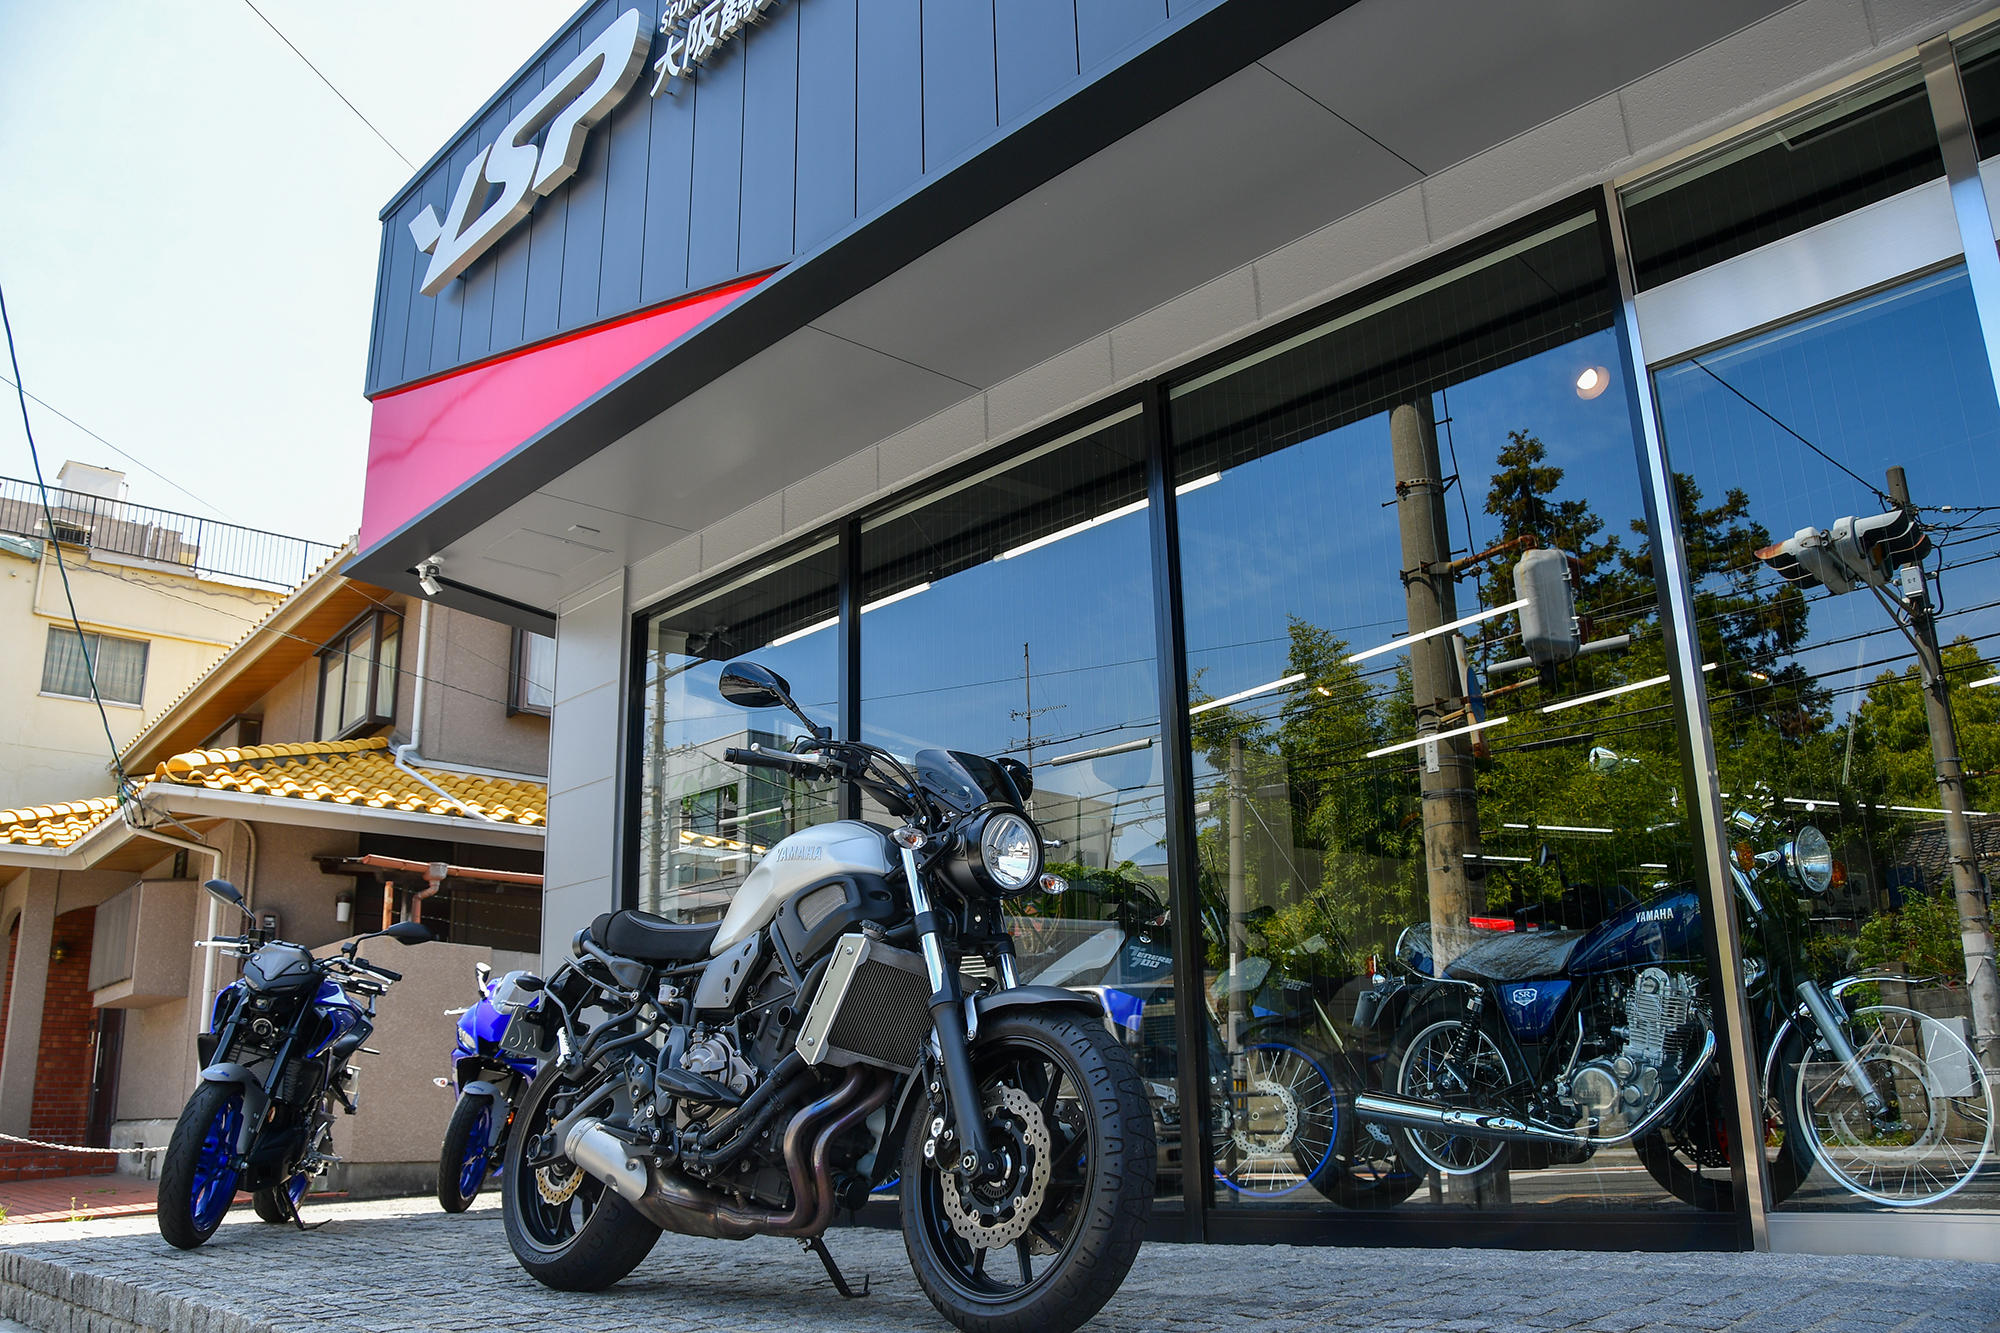 ヤマハを愛するすべてのお客さまに「最高のブランド体験」をお約束するヤマハスポーツバイク※専門店YSP